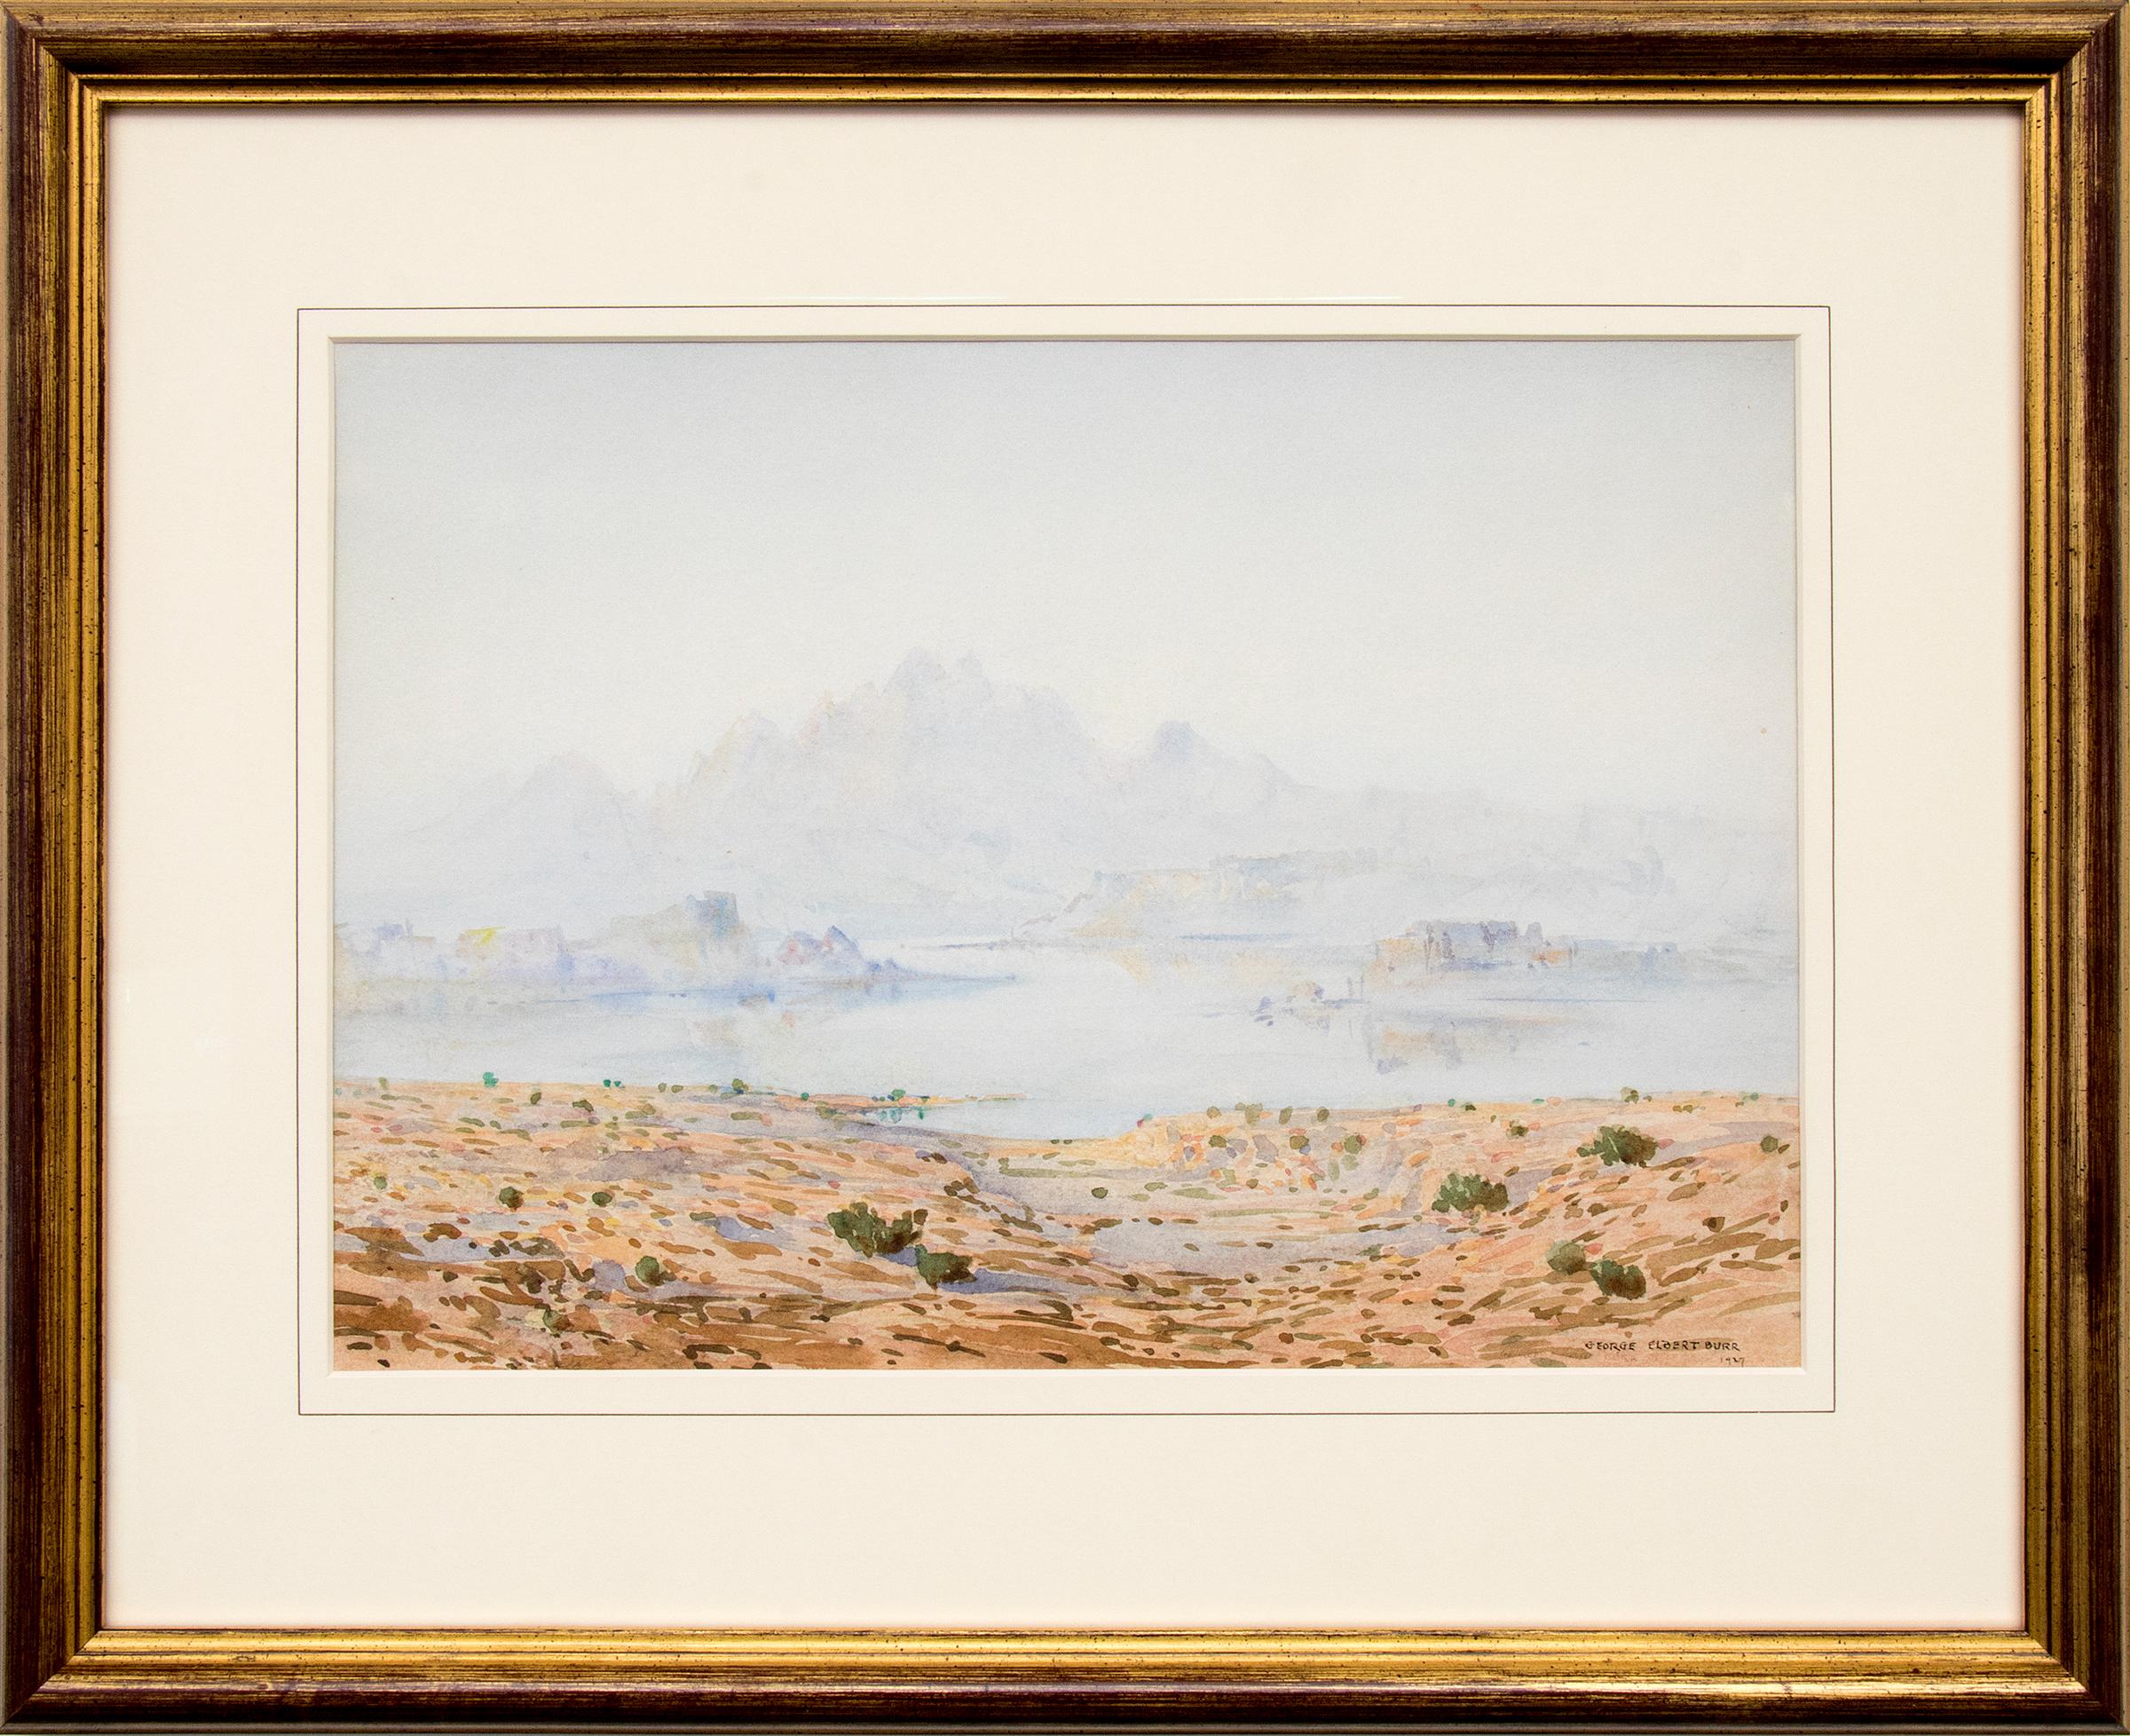 A Mirage- Modernist 1920s Arizona Southwest Desert Landscape Watercolor Painting